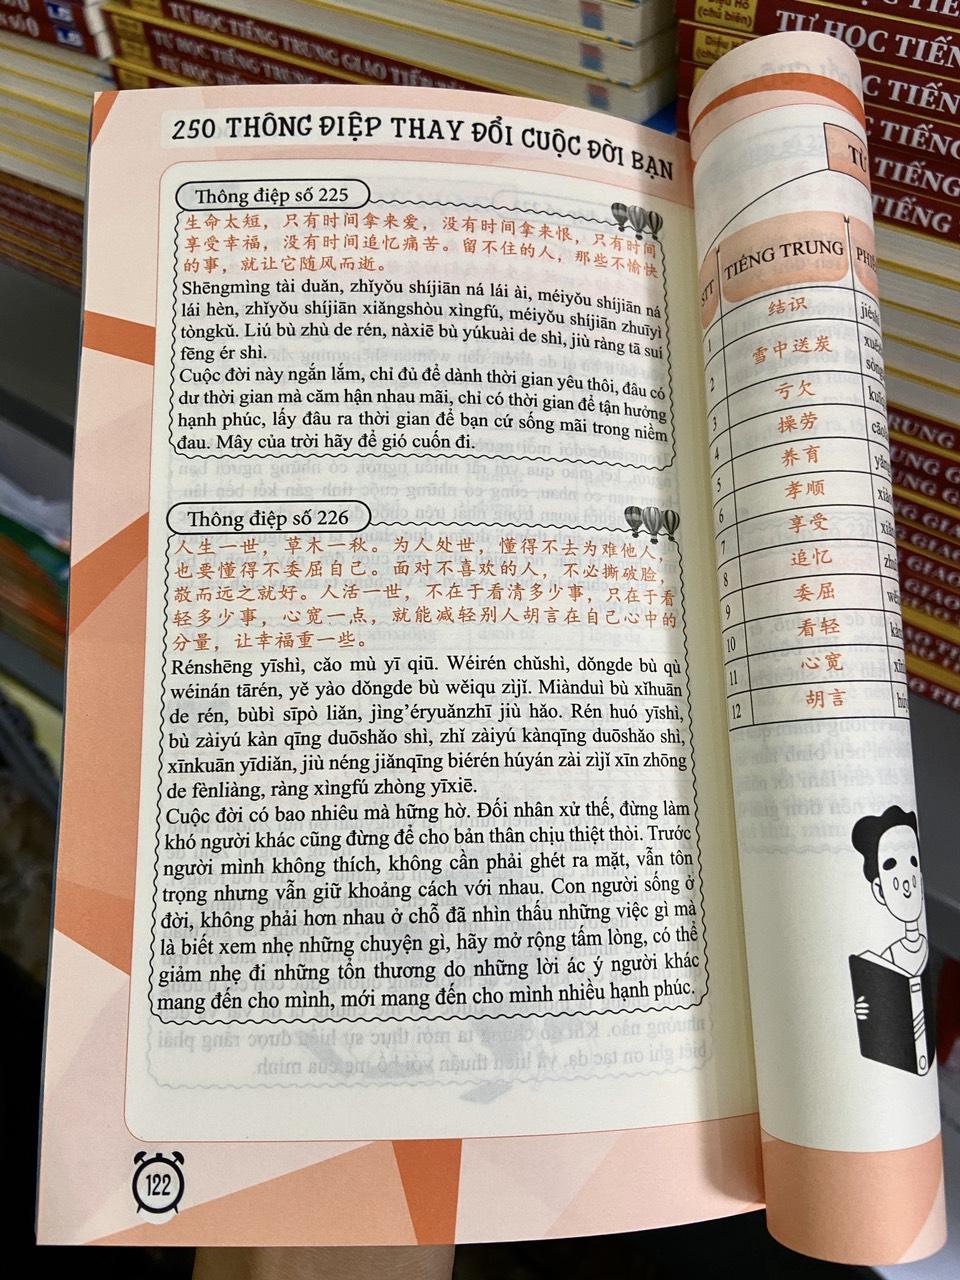 250 Thông Điệp Thay Đổi Cuộc Đời Bạn - Song Ngữ Trung Việt (Tiếng Trung giản thể, bính âm Pinyin, nghĩa tiếng Việt, DVD tài liệu đi kèm)